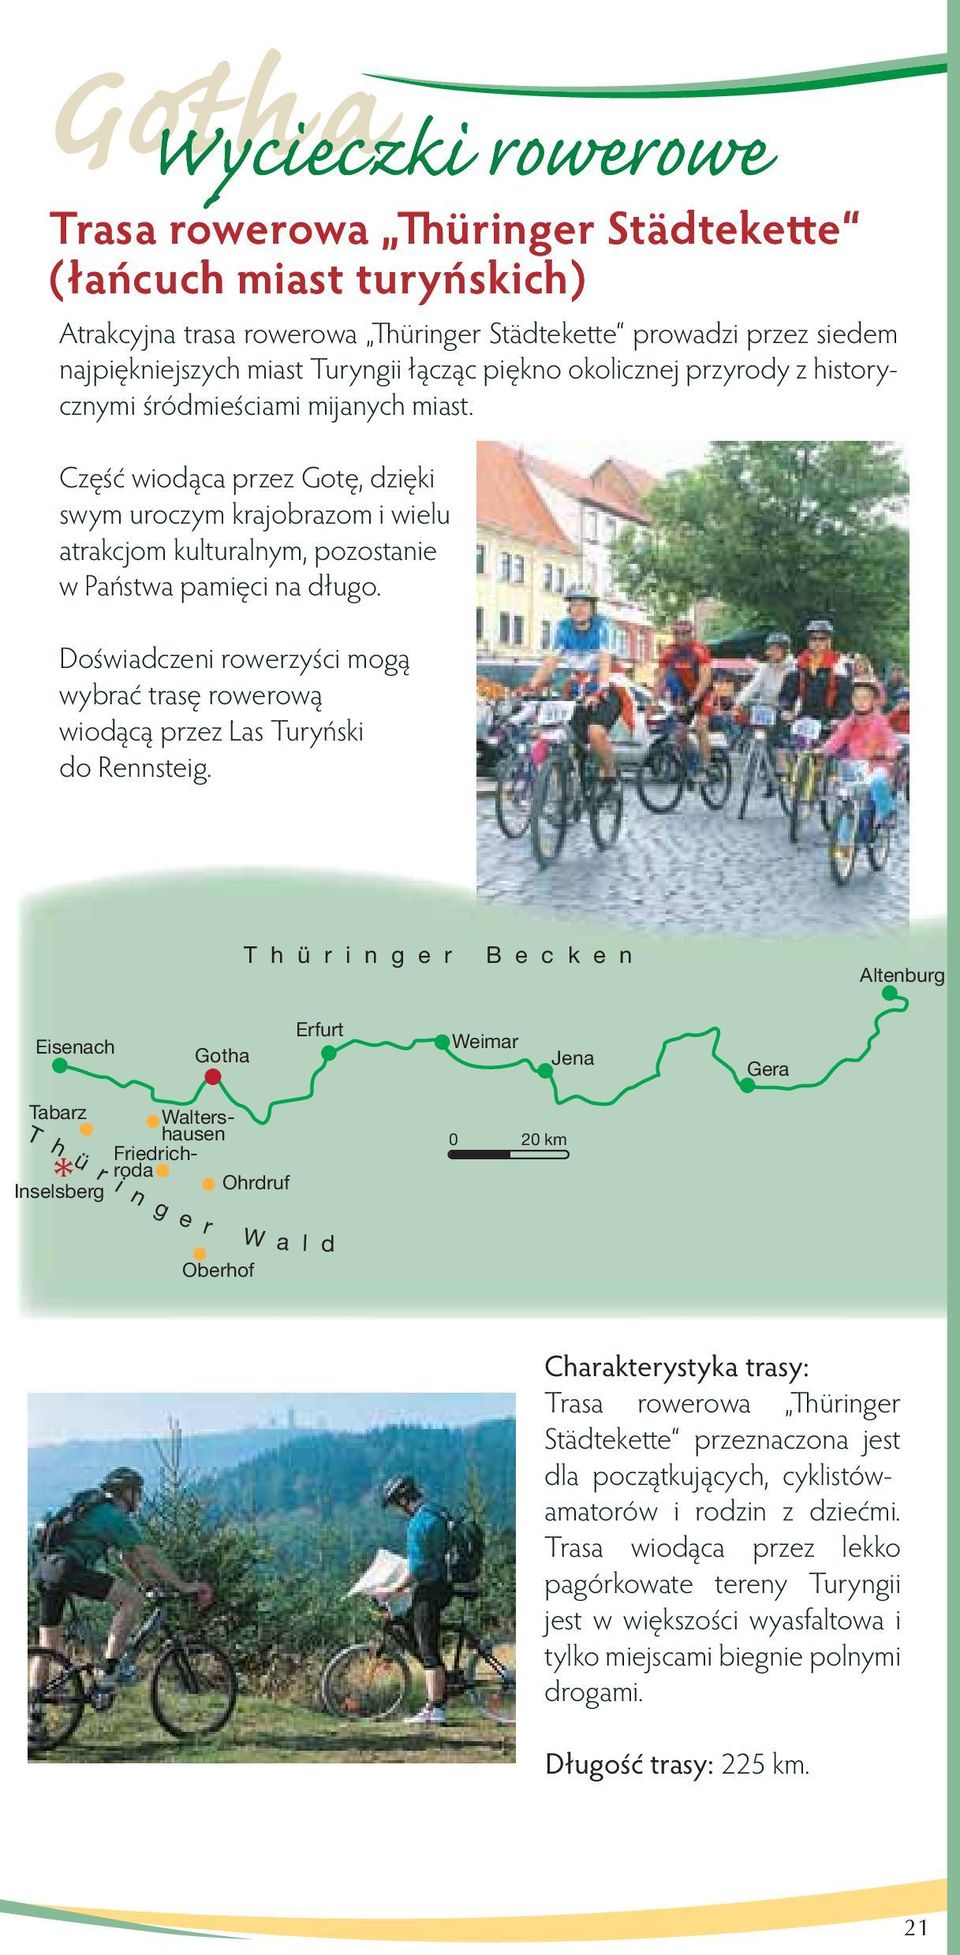 Doświadczeni rowerzyści mogą wybrać trasę rowerową wiodącą przez Las Turyński do Rennsteig.